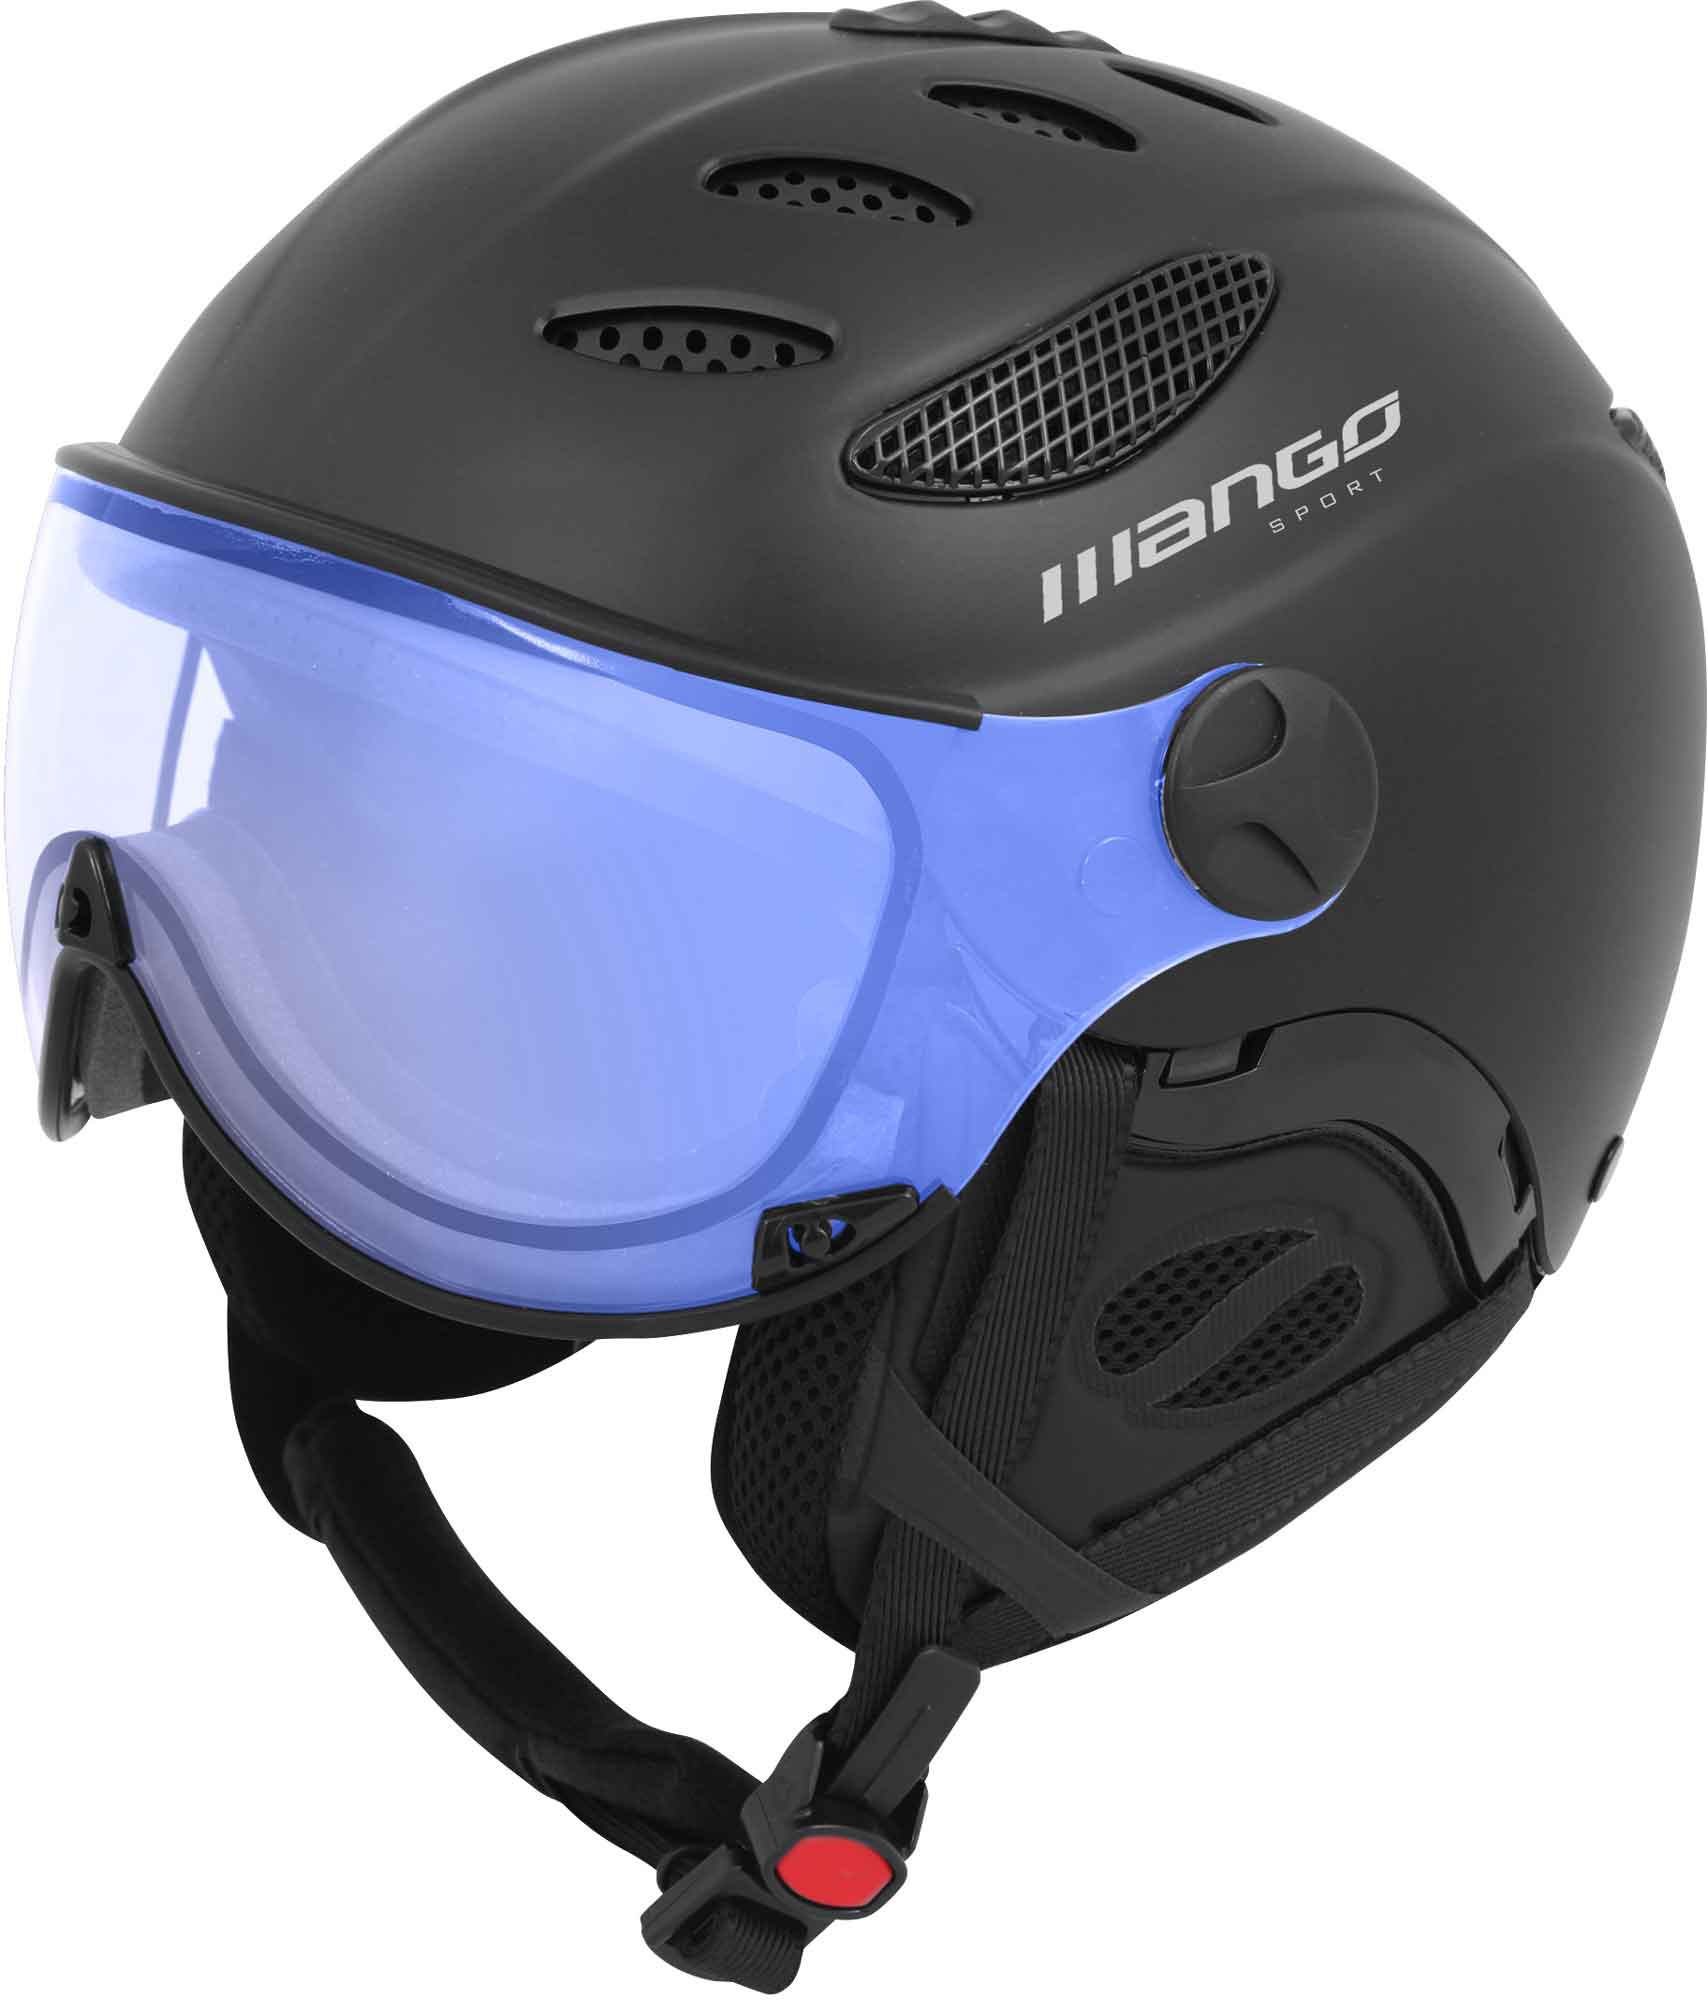 Unisex lyžařská přilba s visorem